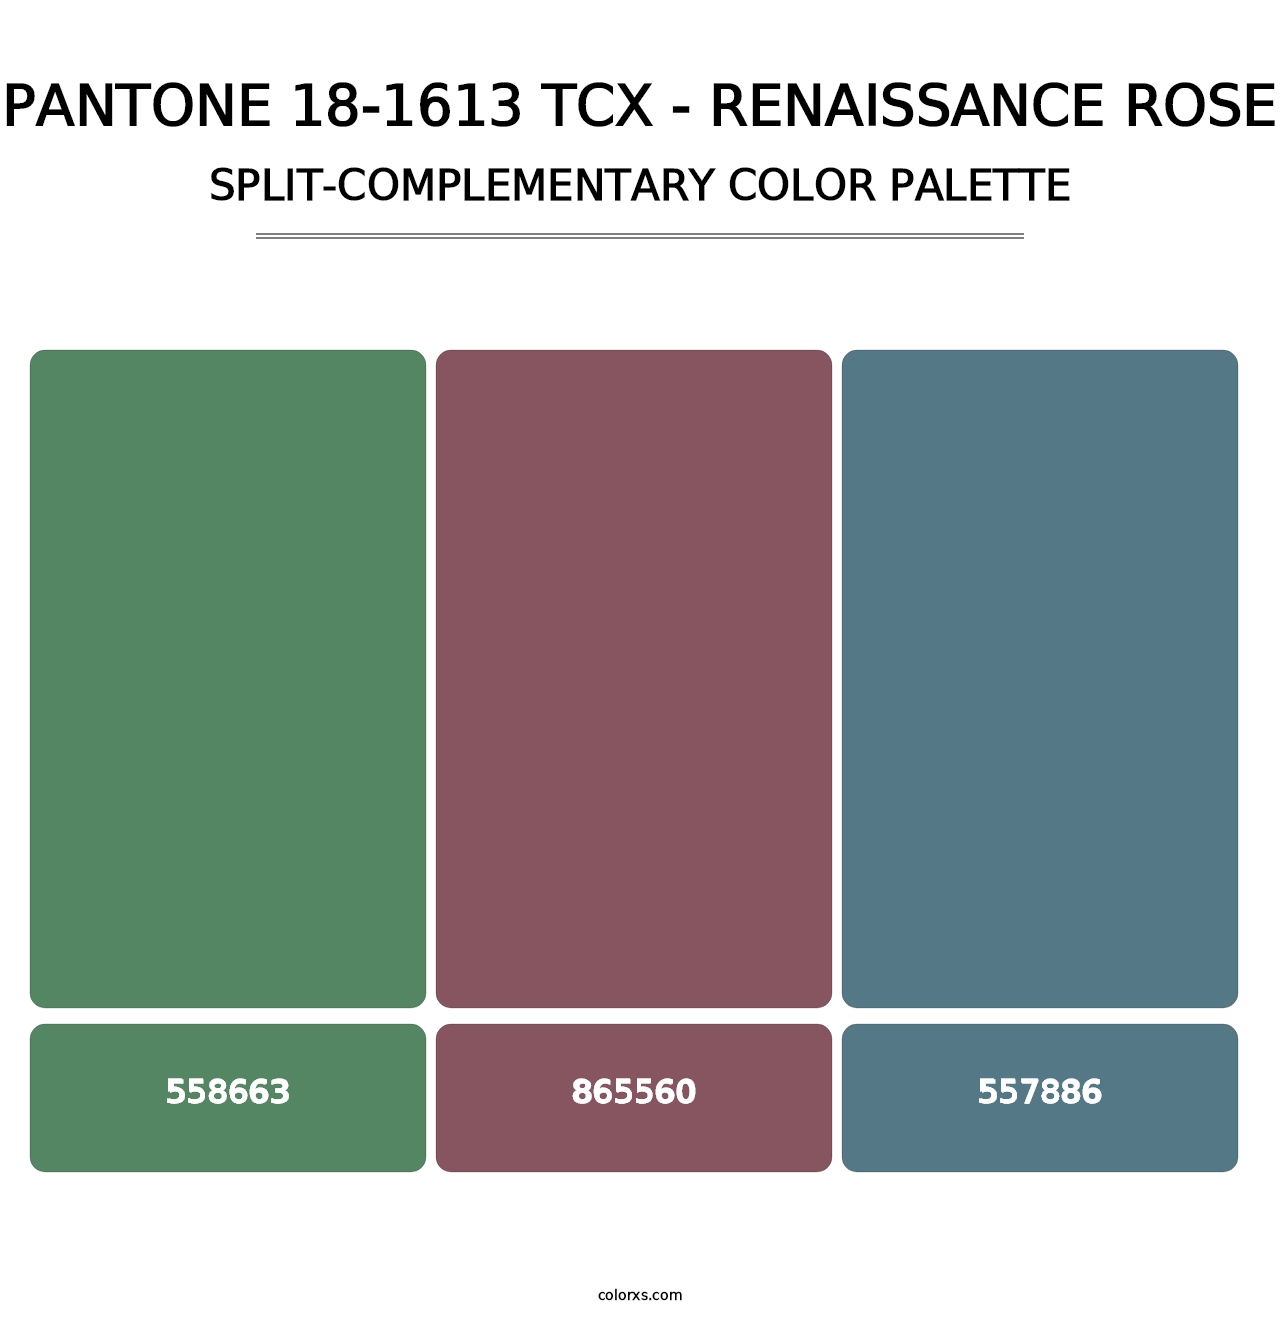 PANTONE 18-1613 TCX - Renaissance Rose - Split-Complementary Color Palette